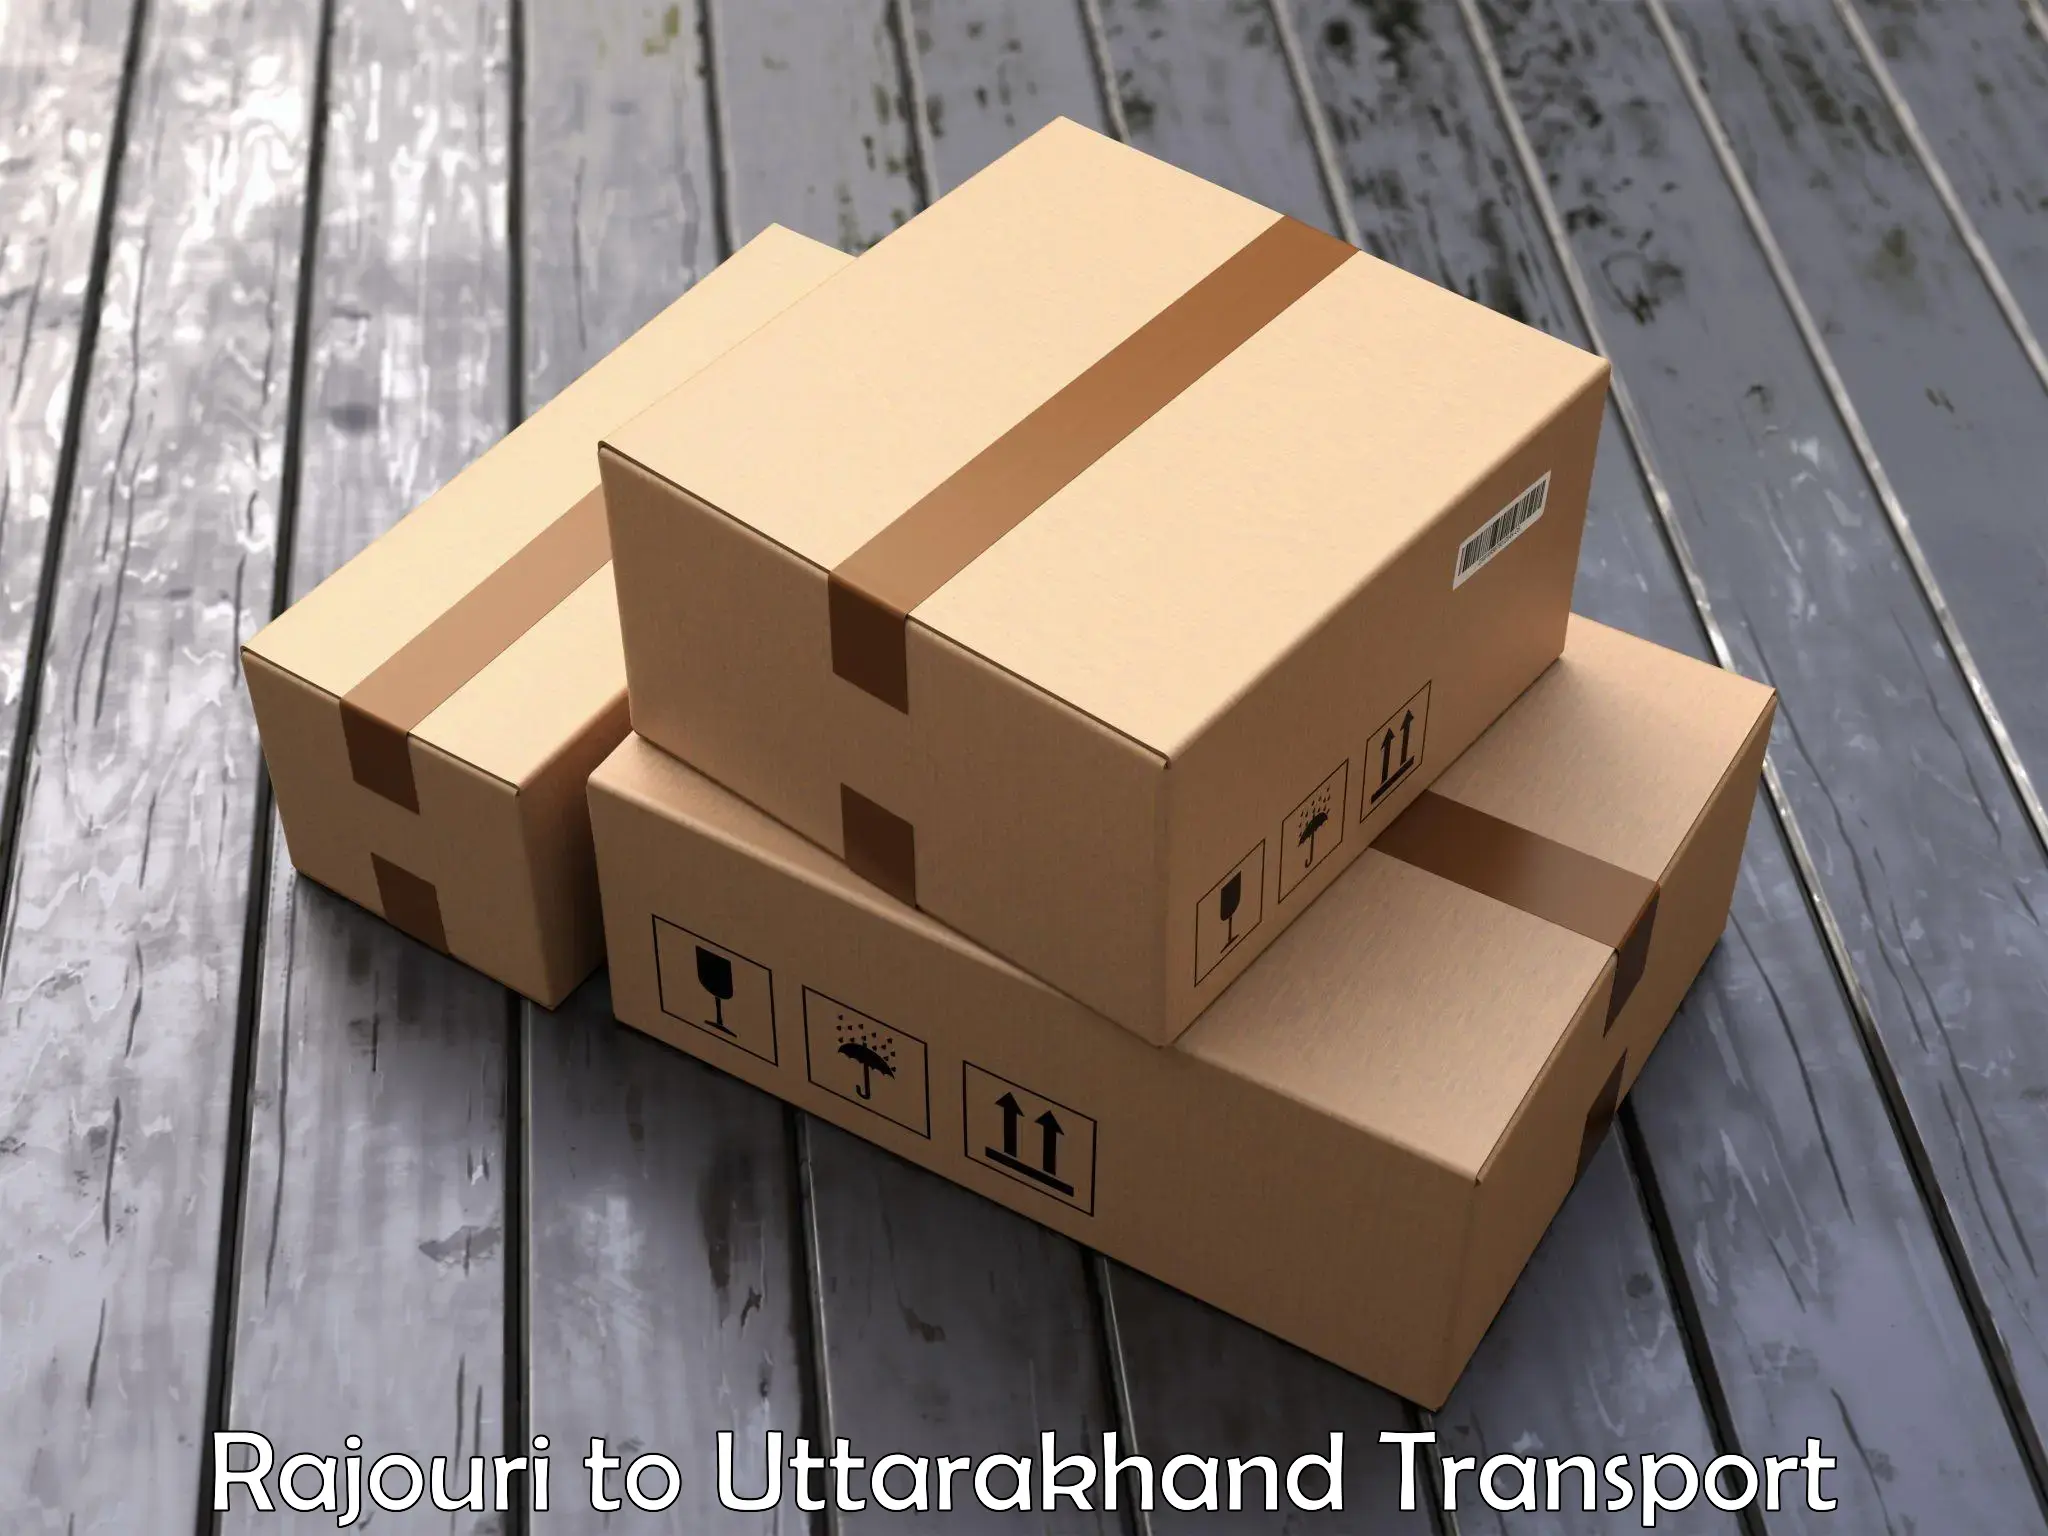 Nationwide transport services Rajouri to Uttarakhand